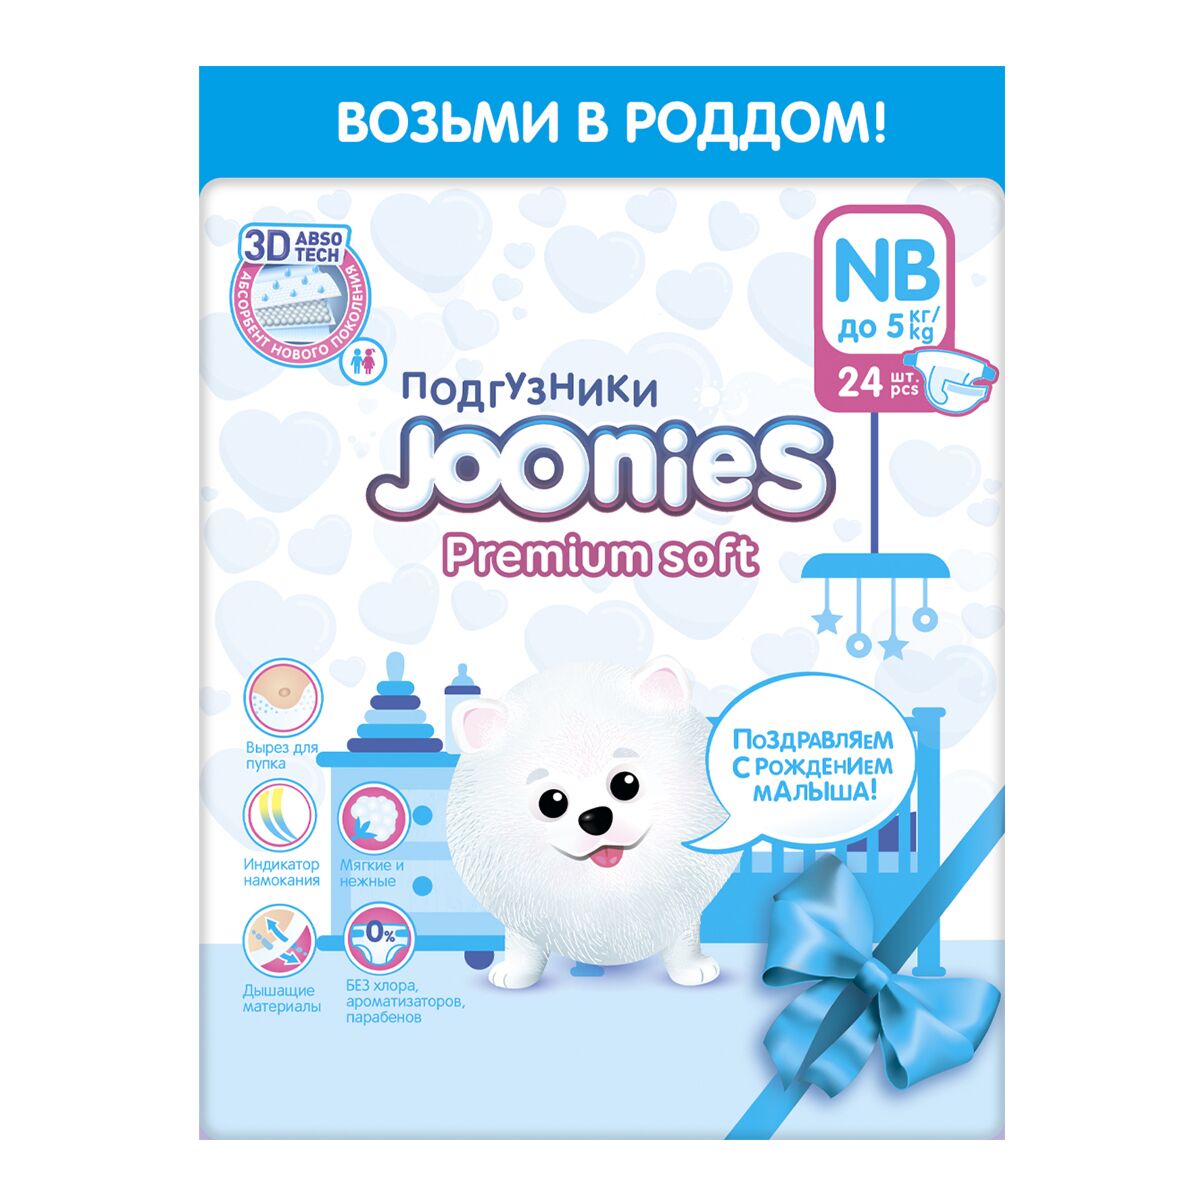 Подгузники NB до 5кг, Joonies Premium Soft, 24 шт. (новый дизайн)